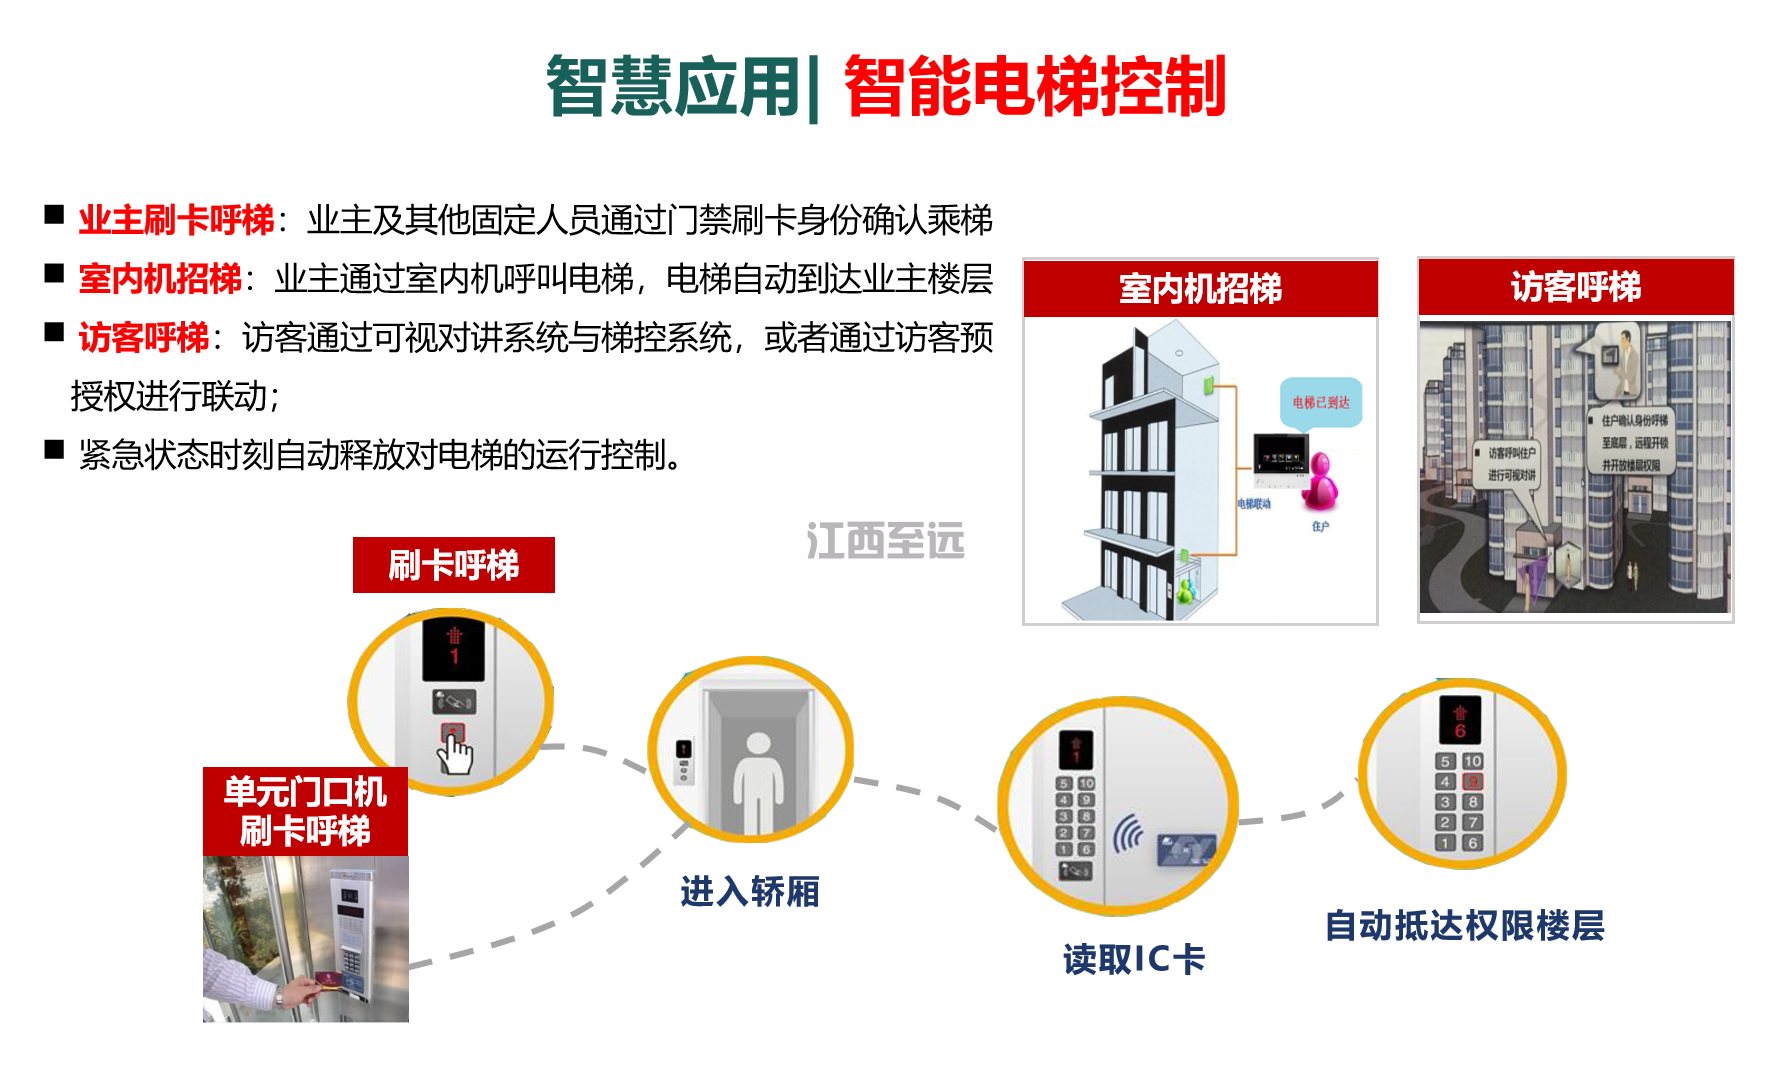 江西至遠-智慧社區/小(xiǎo)區建設解決方案(圖12)